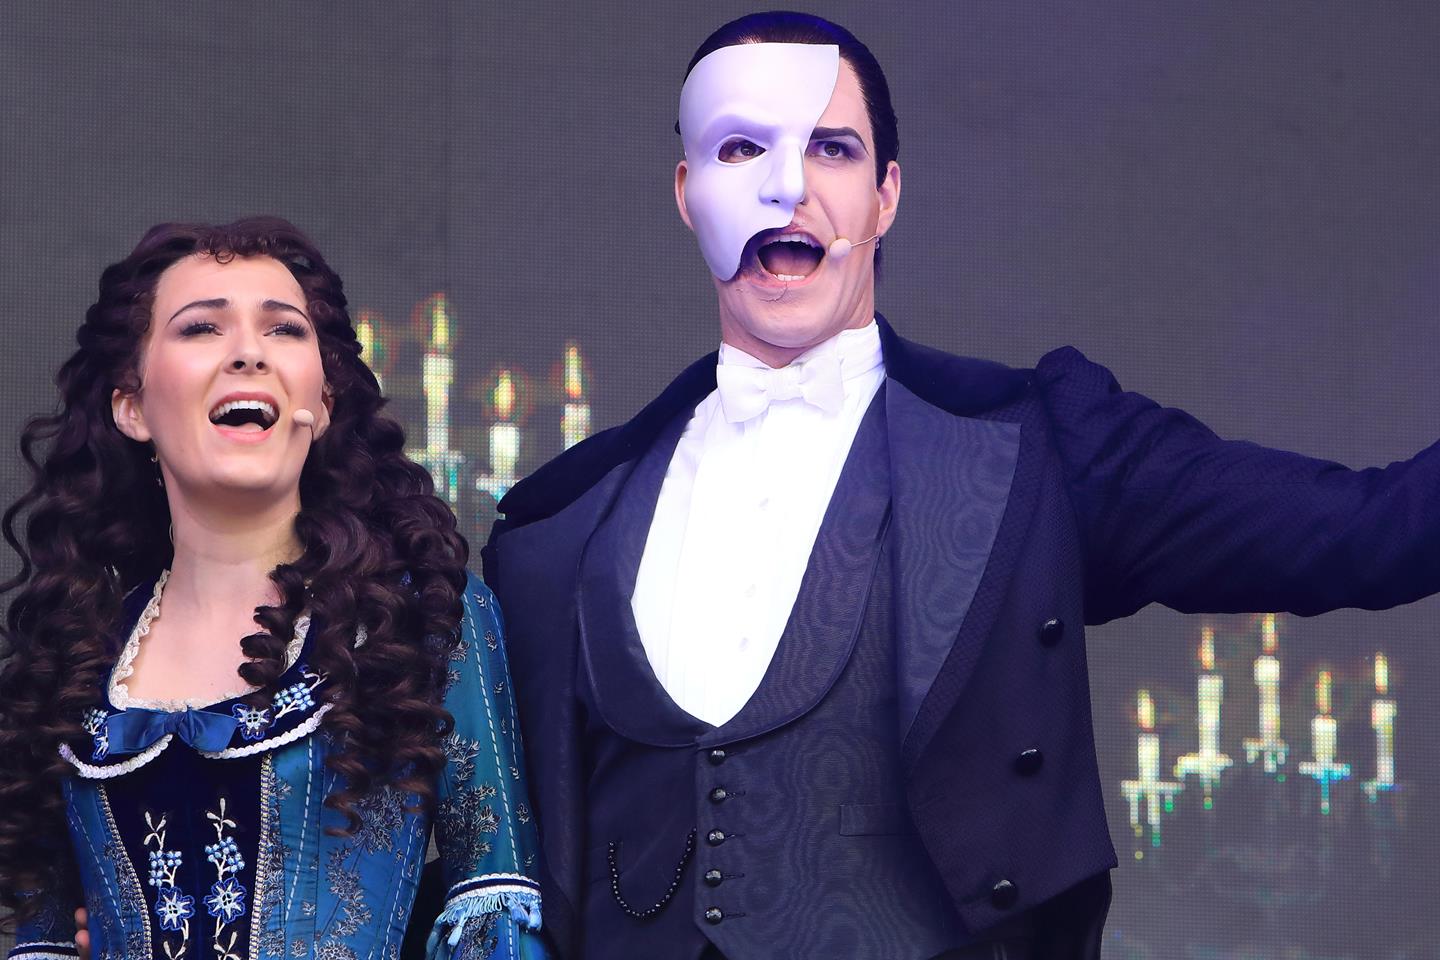 phantom of the opera cast 2009